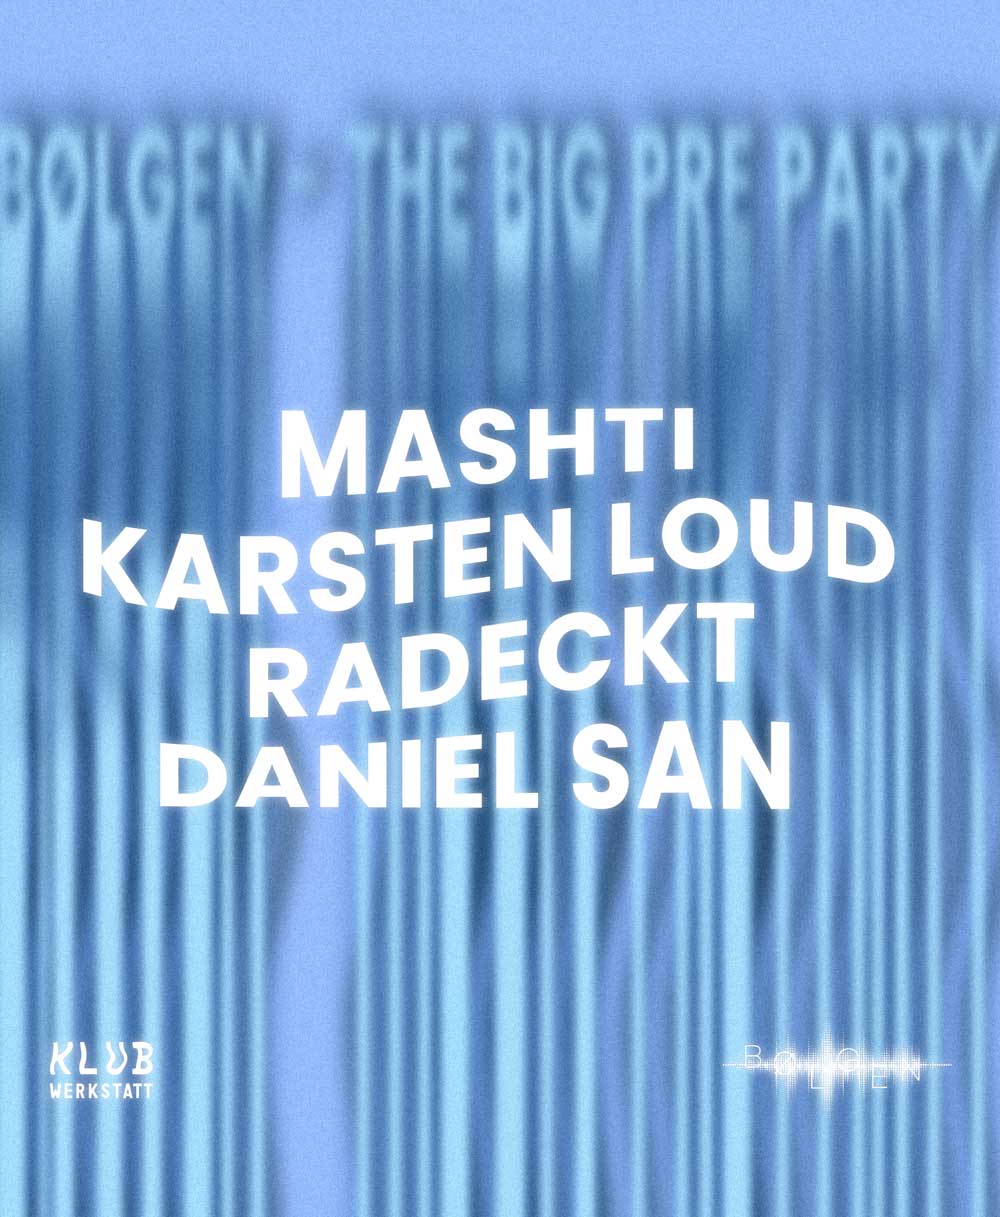 boelgen-the-big-pre-party